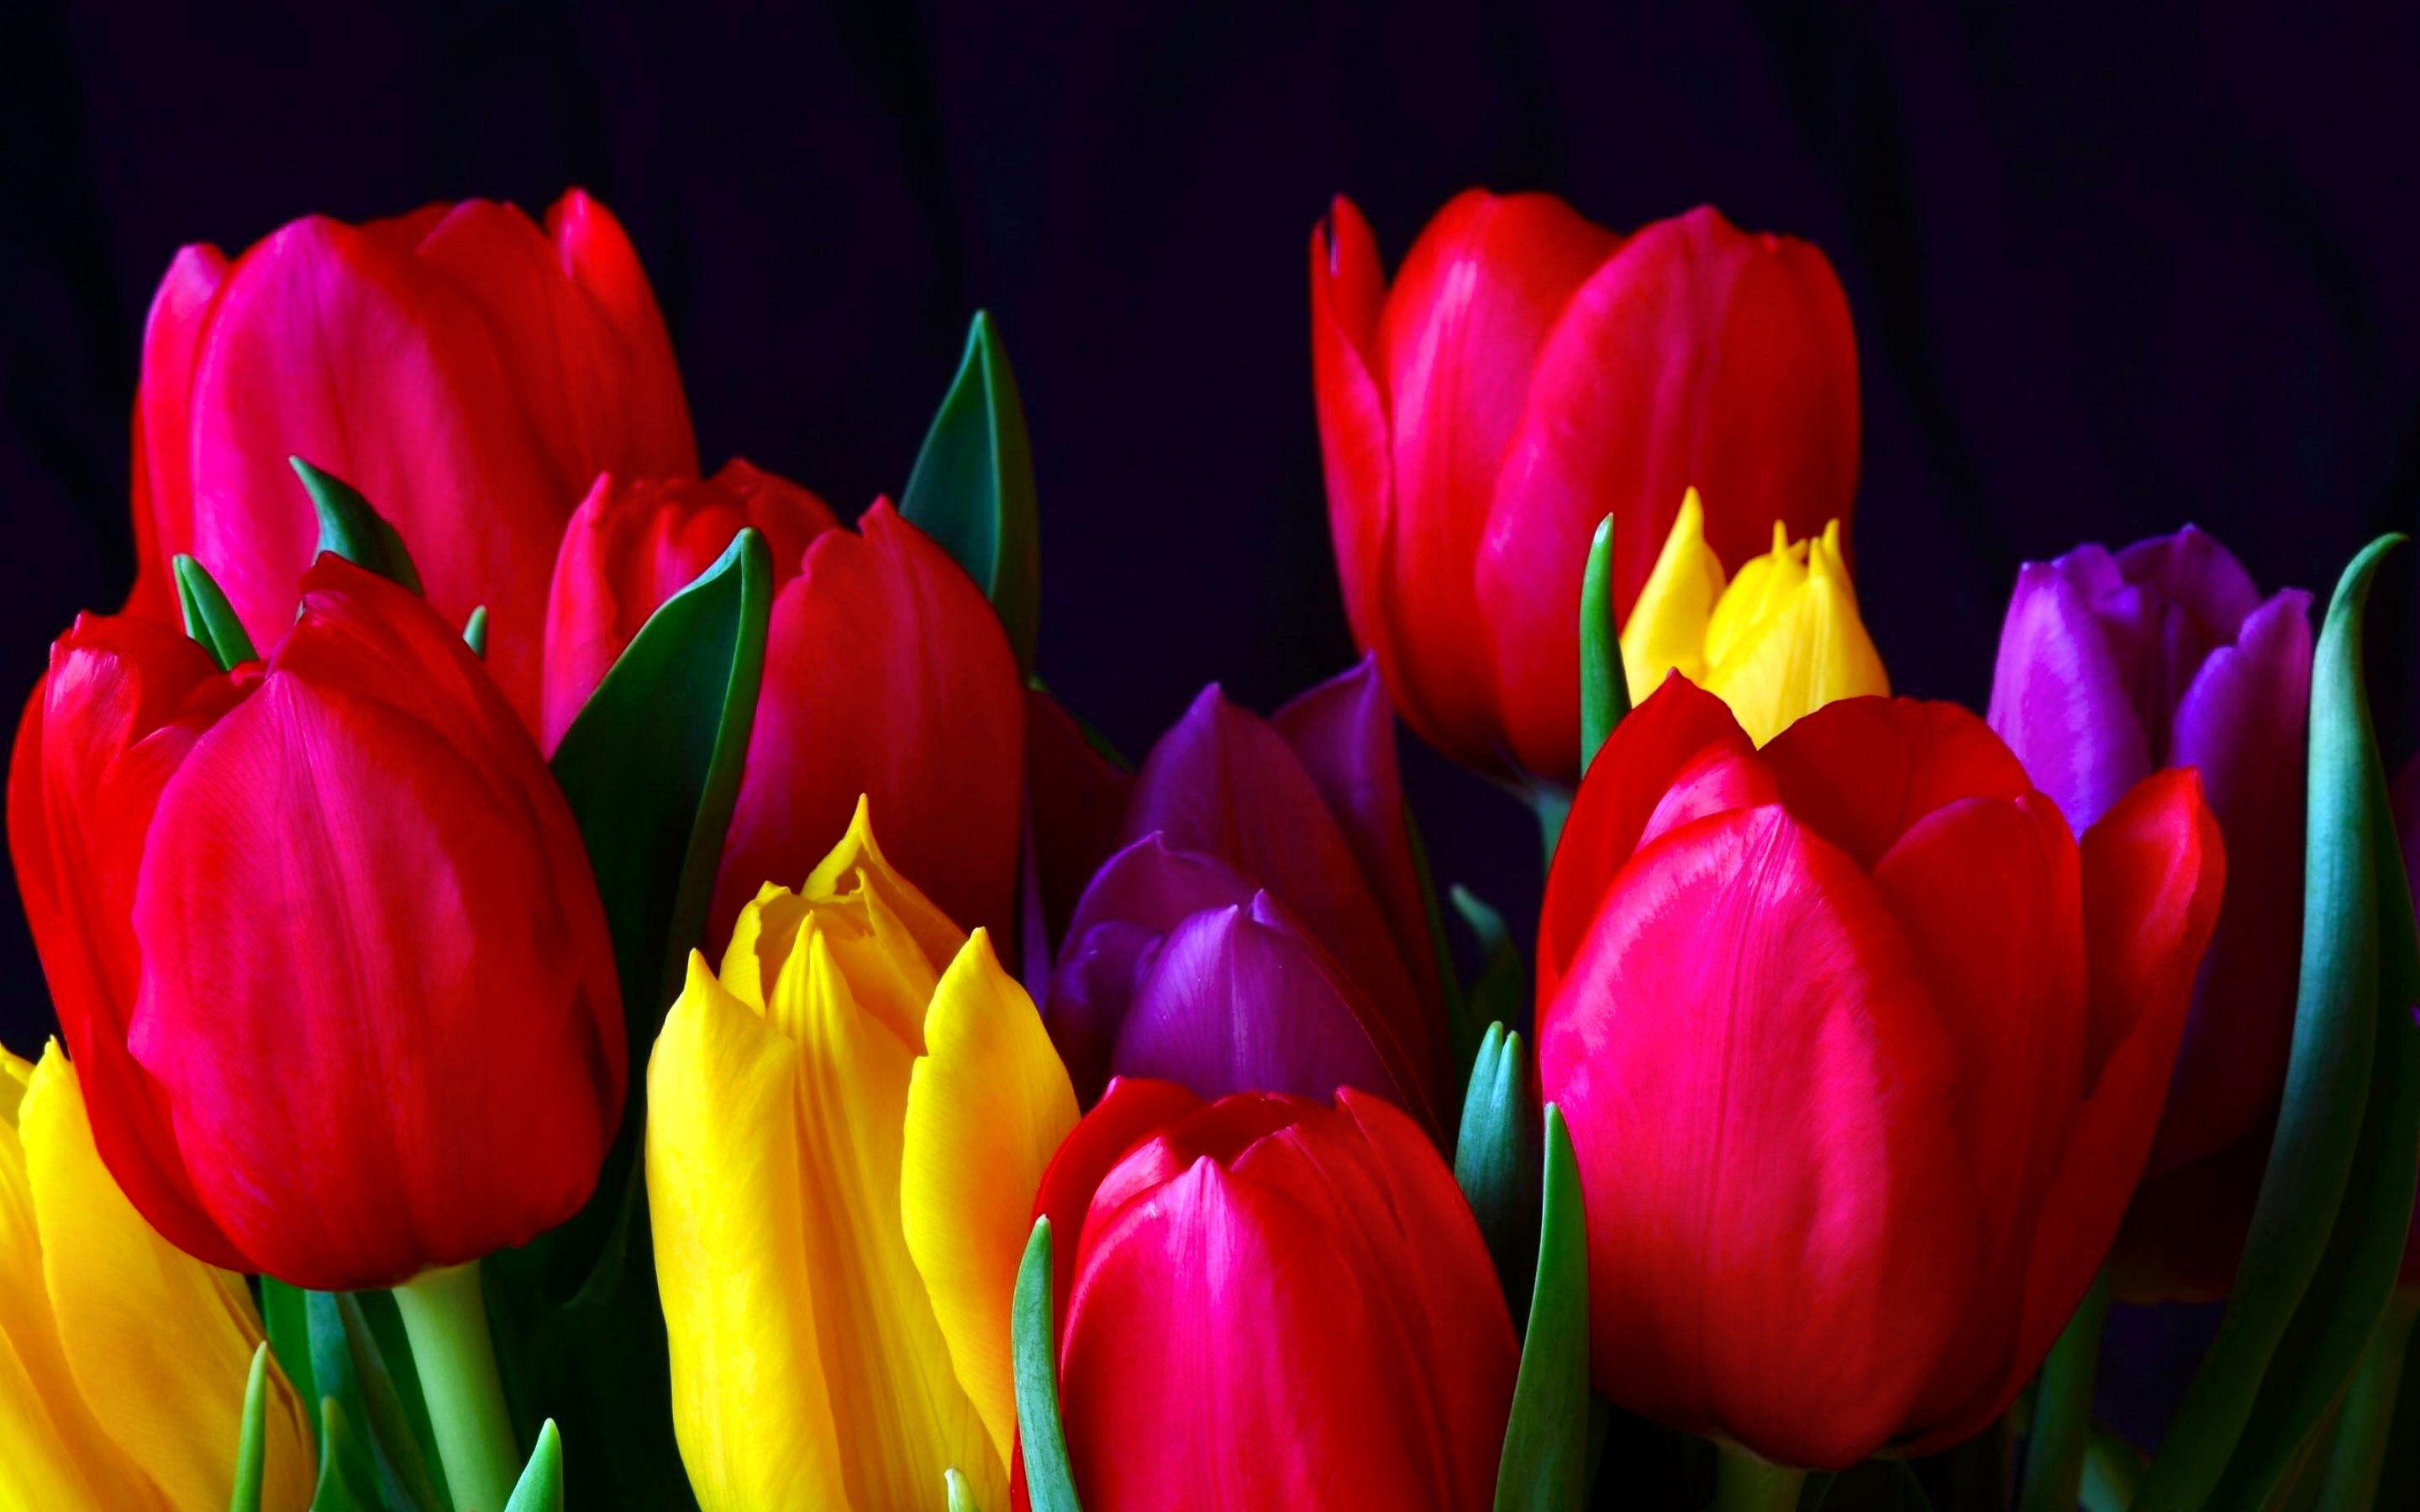 FLOWER [11] tulips [29november2012thursday] [VersionOne162925] Full